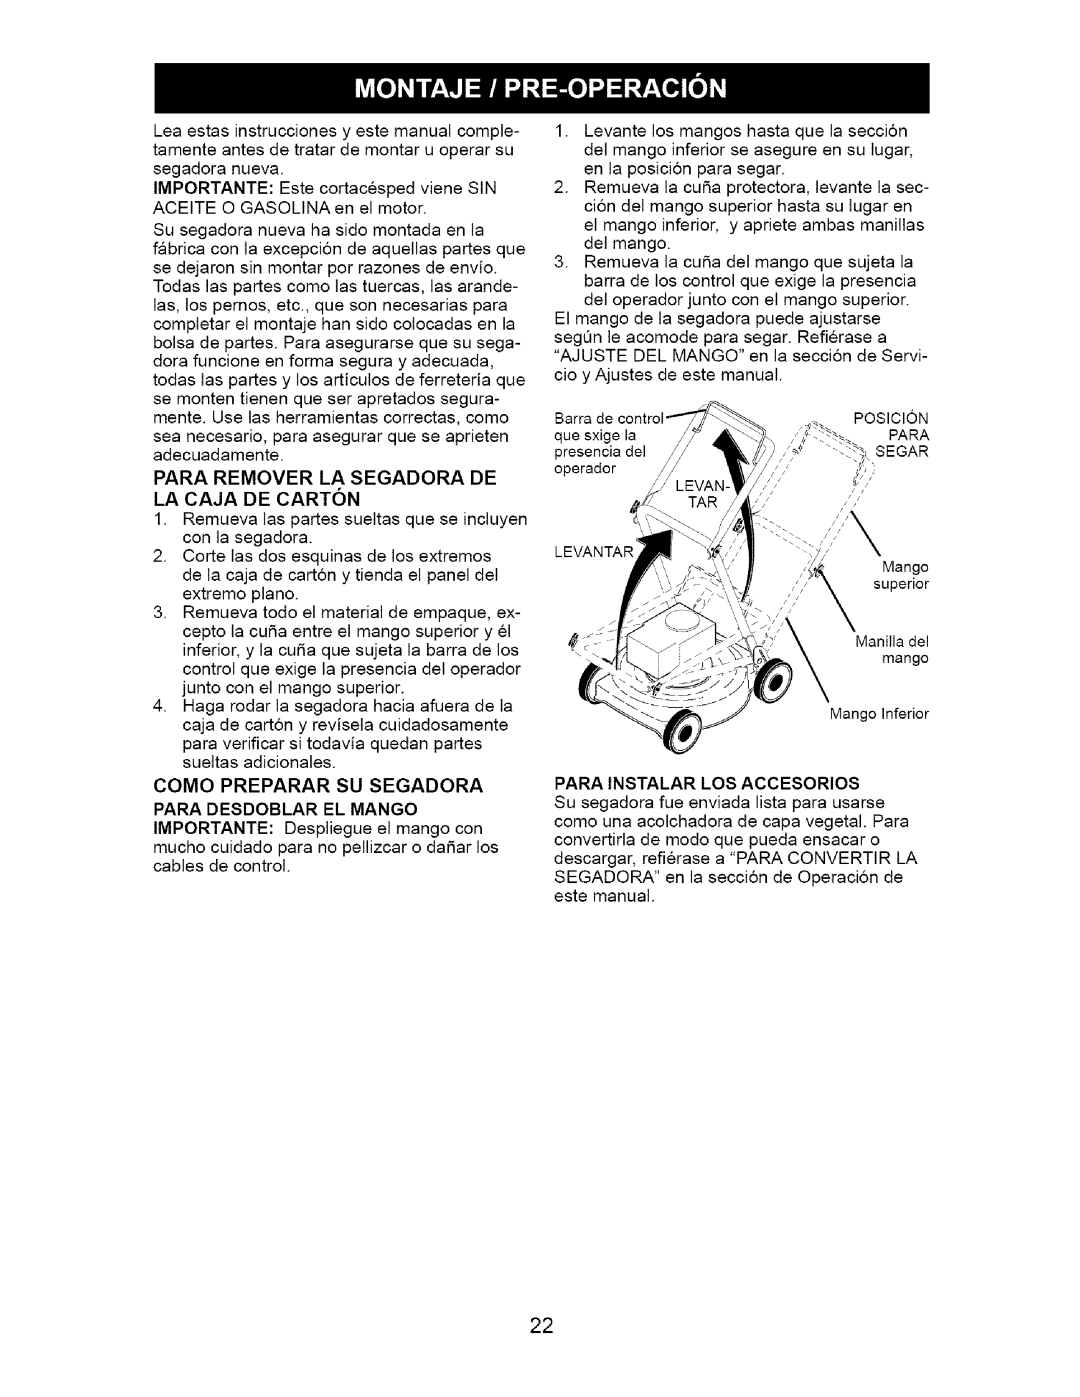 Craftsman 917.385140 owner manual Como Preparar Su Segadora Para Desdoblar El Mango, Para Instalar Los Accesorios 